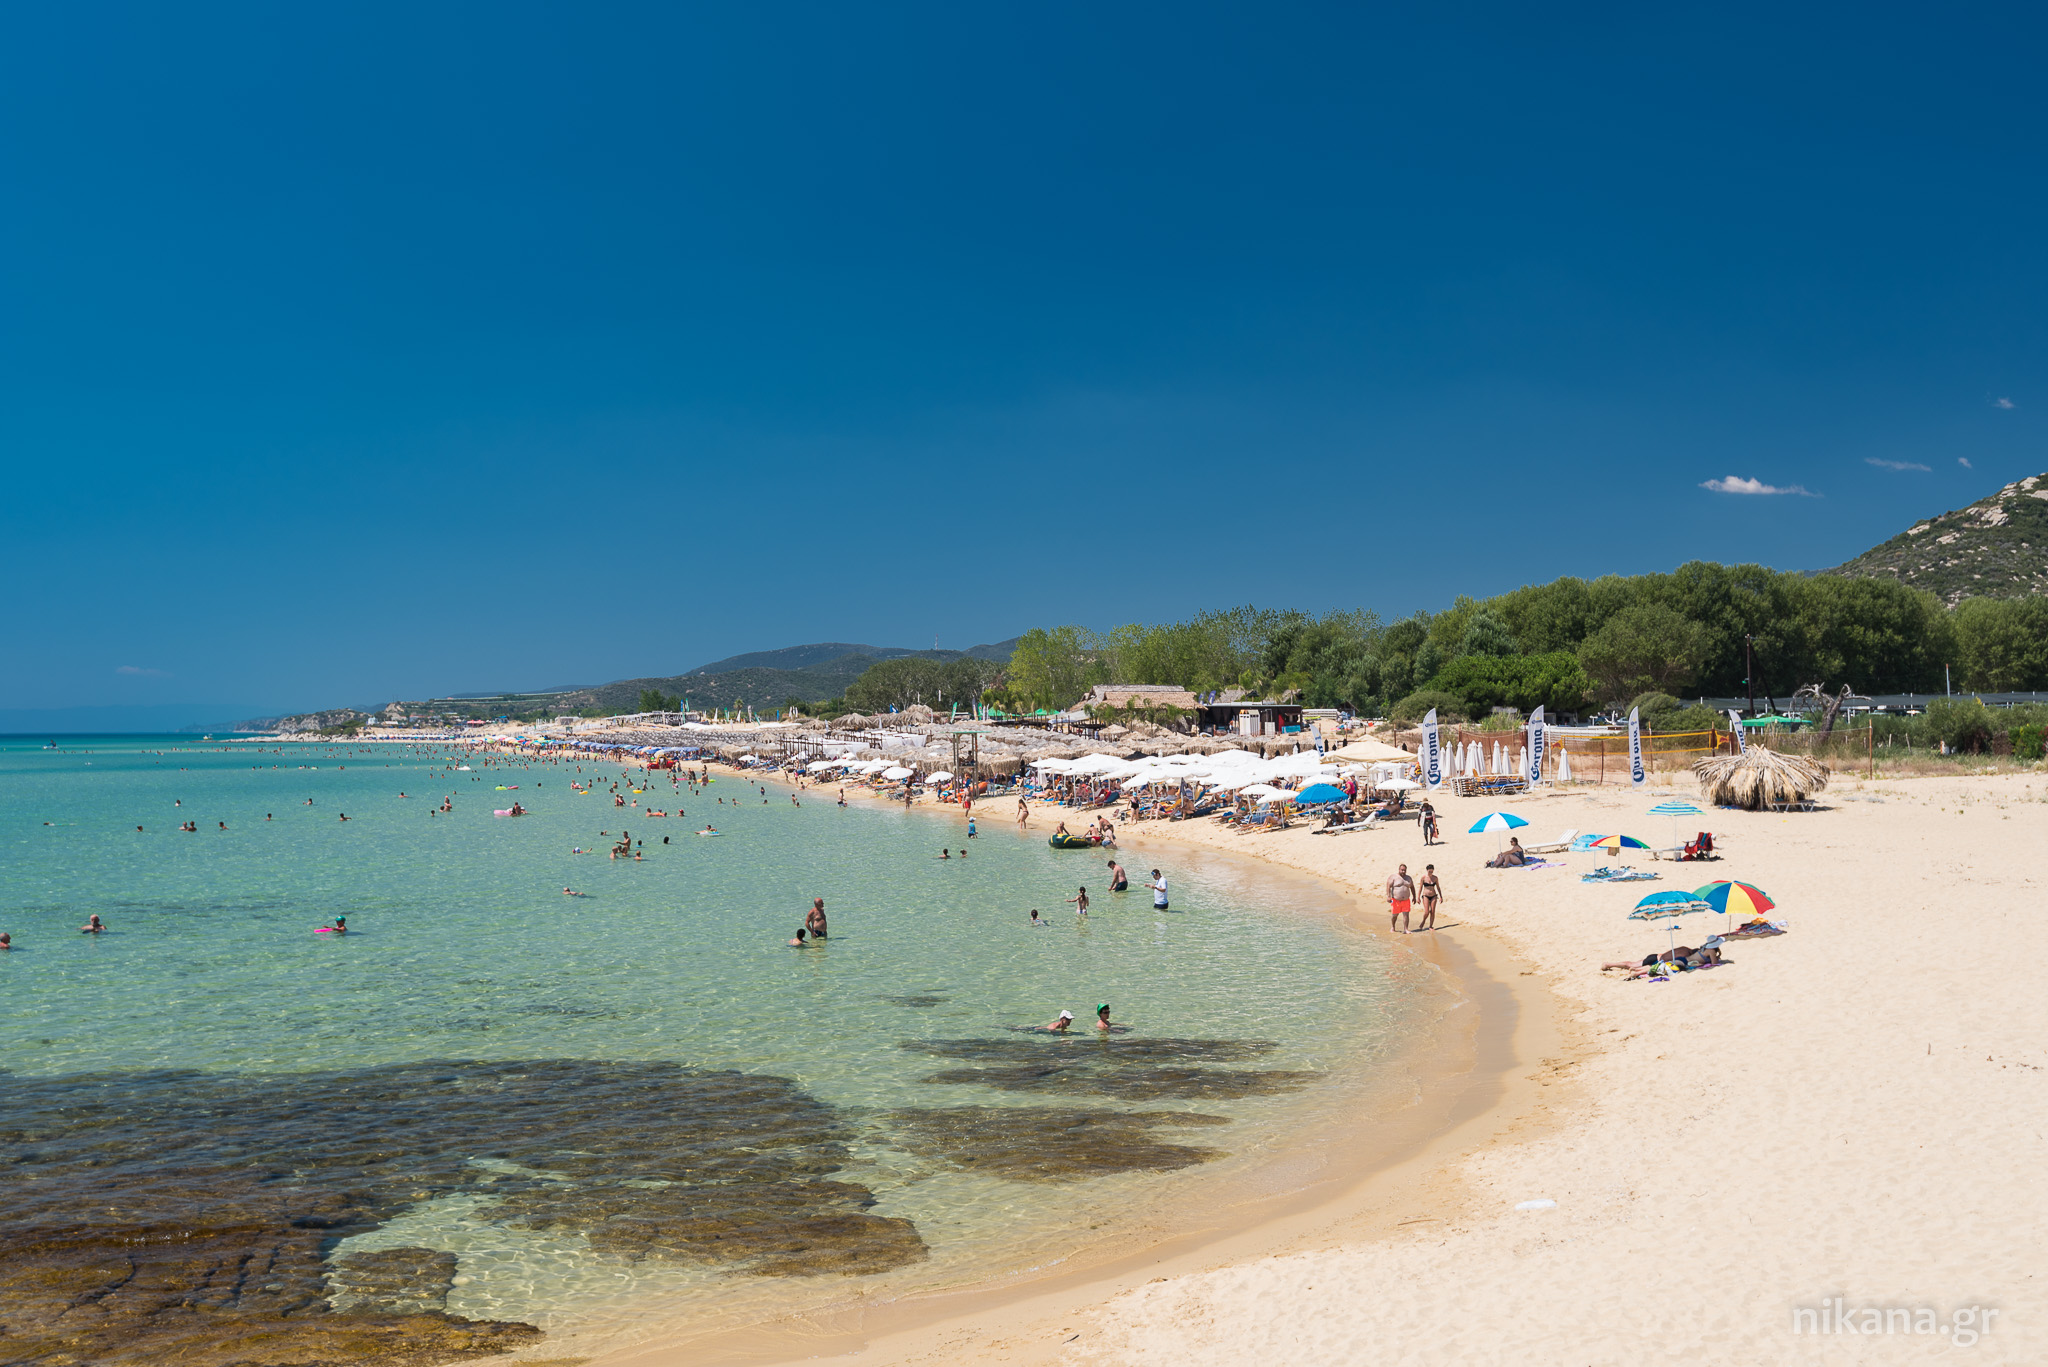 Nea Peramos city beach - Kavala beaches| Nikana.gr